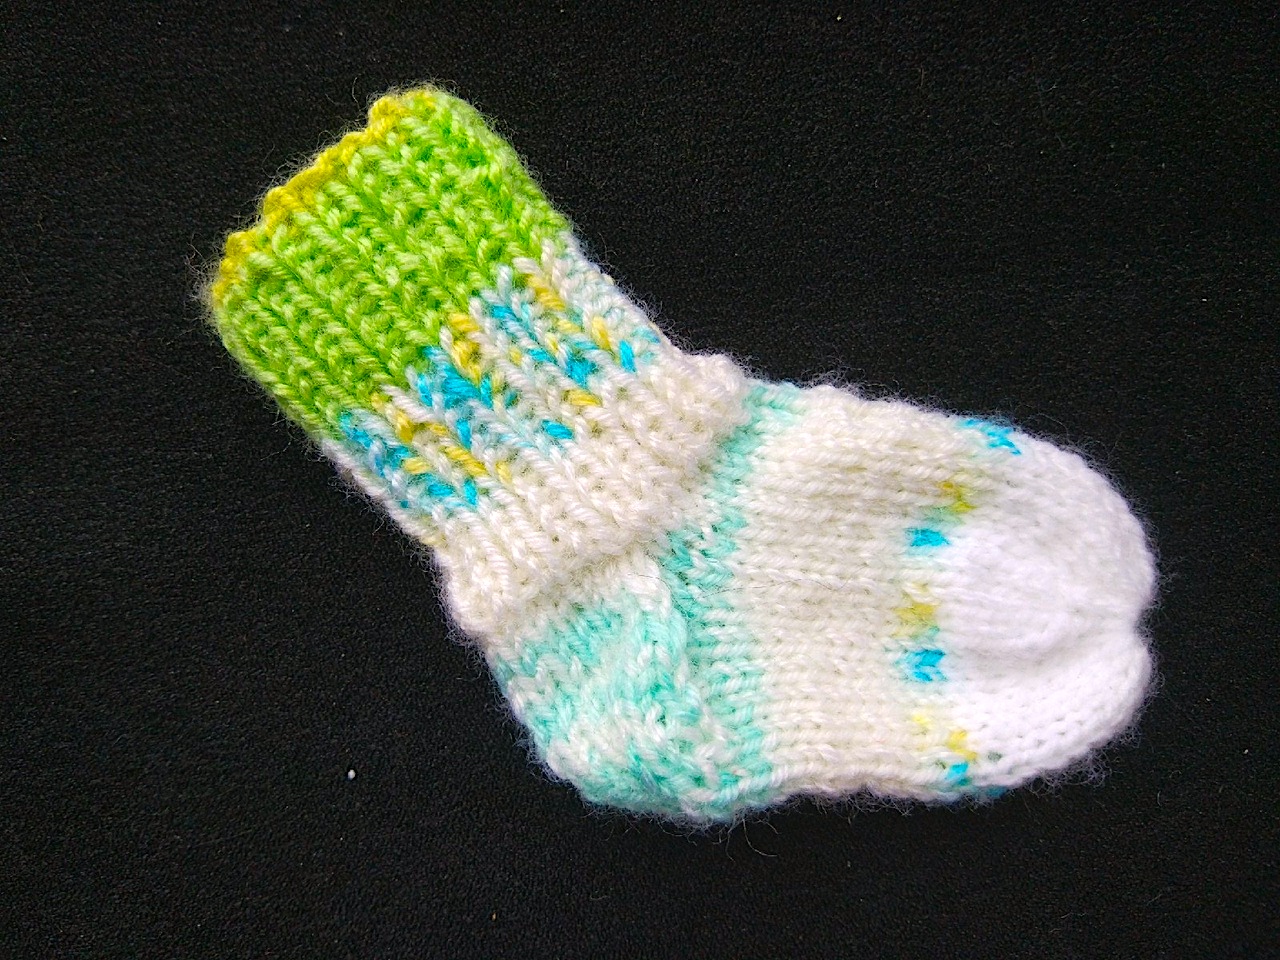 Инструкция, как связать носочки для новорожденных спицами